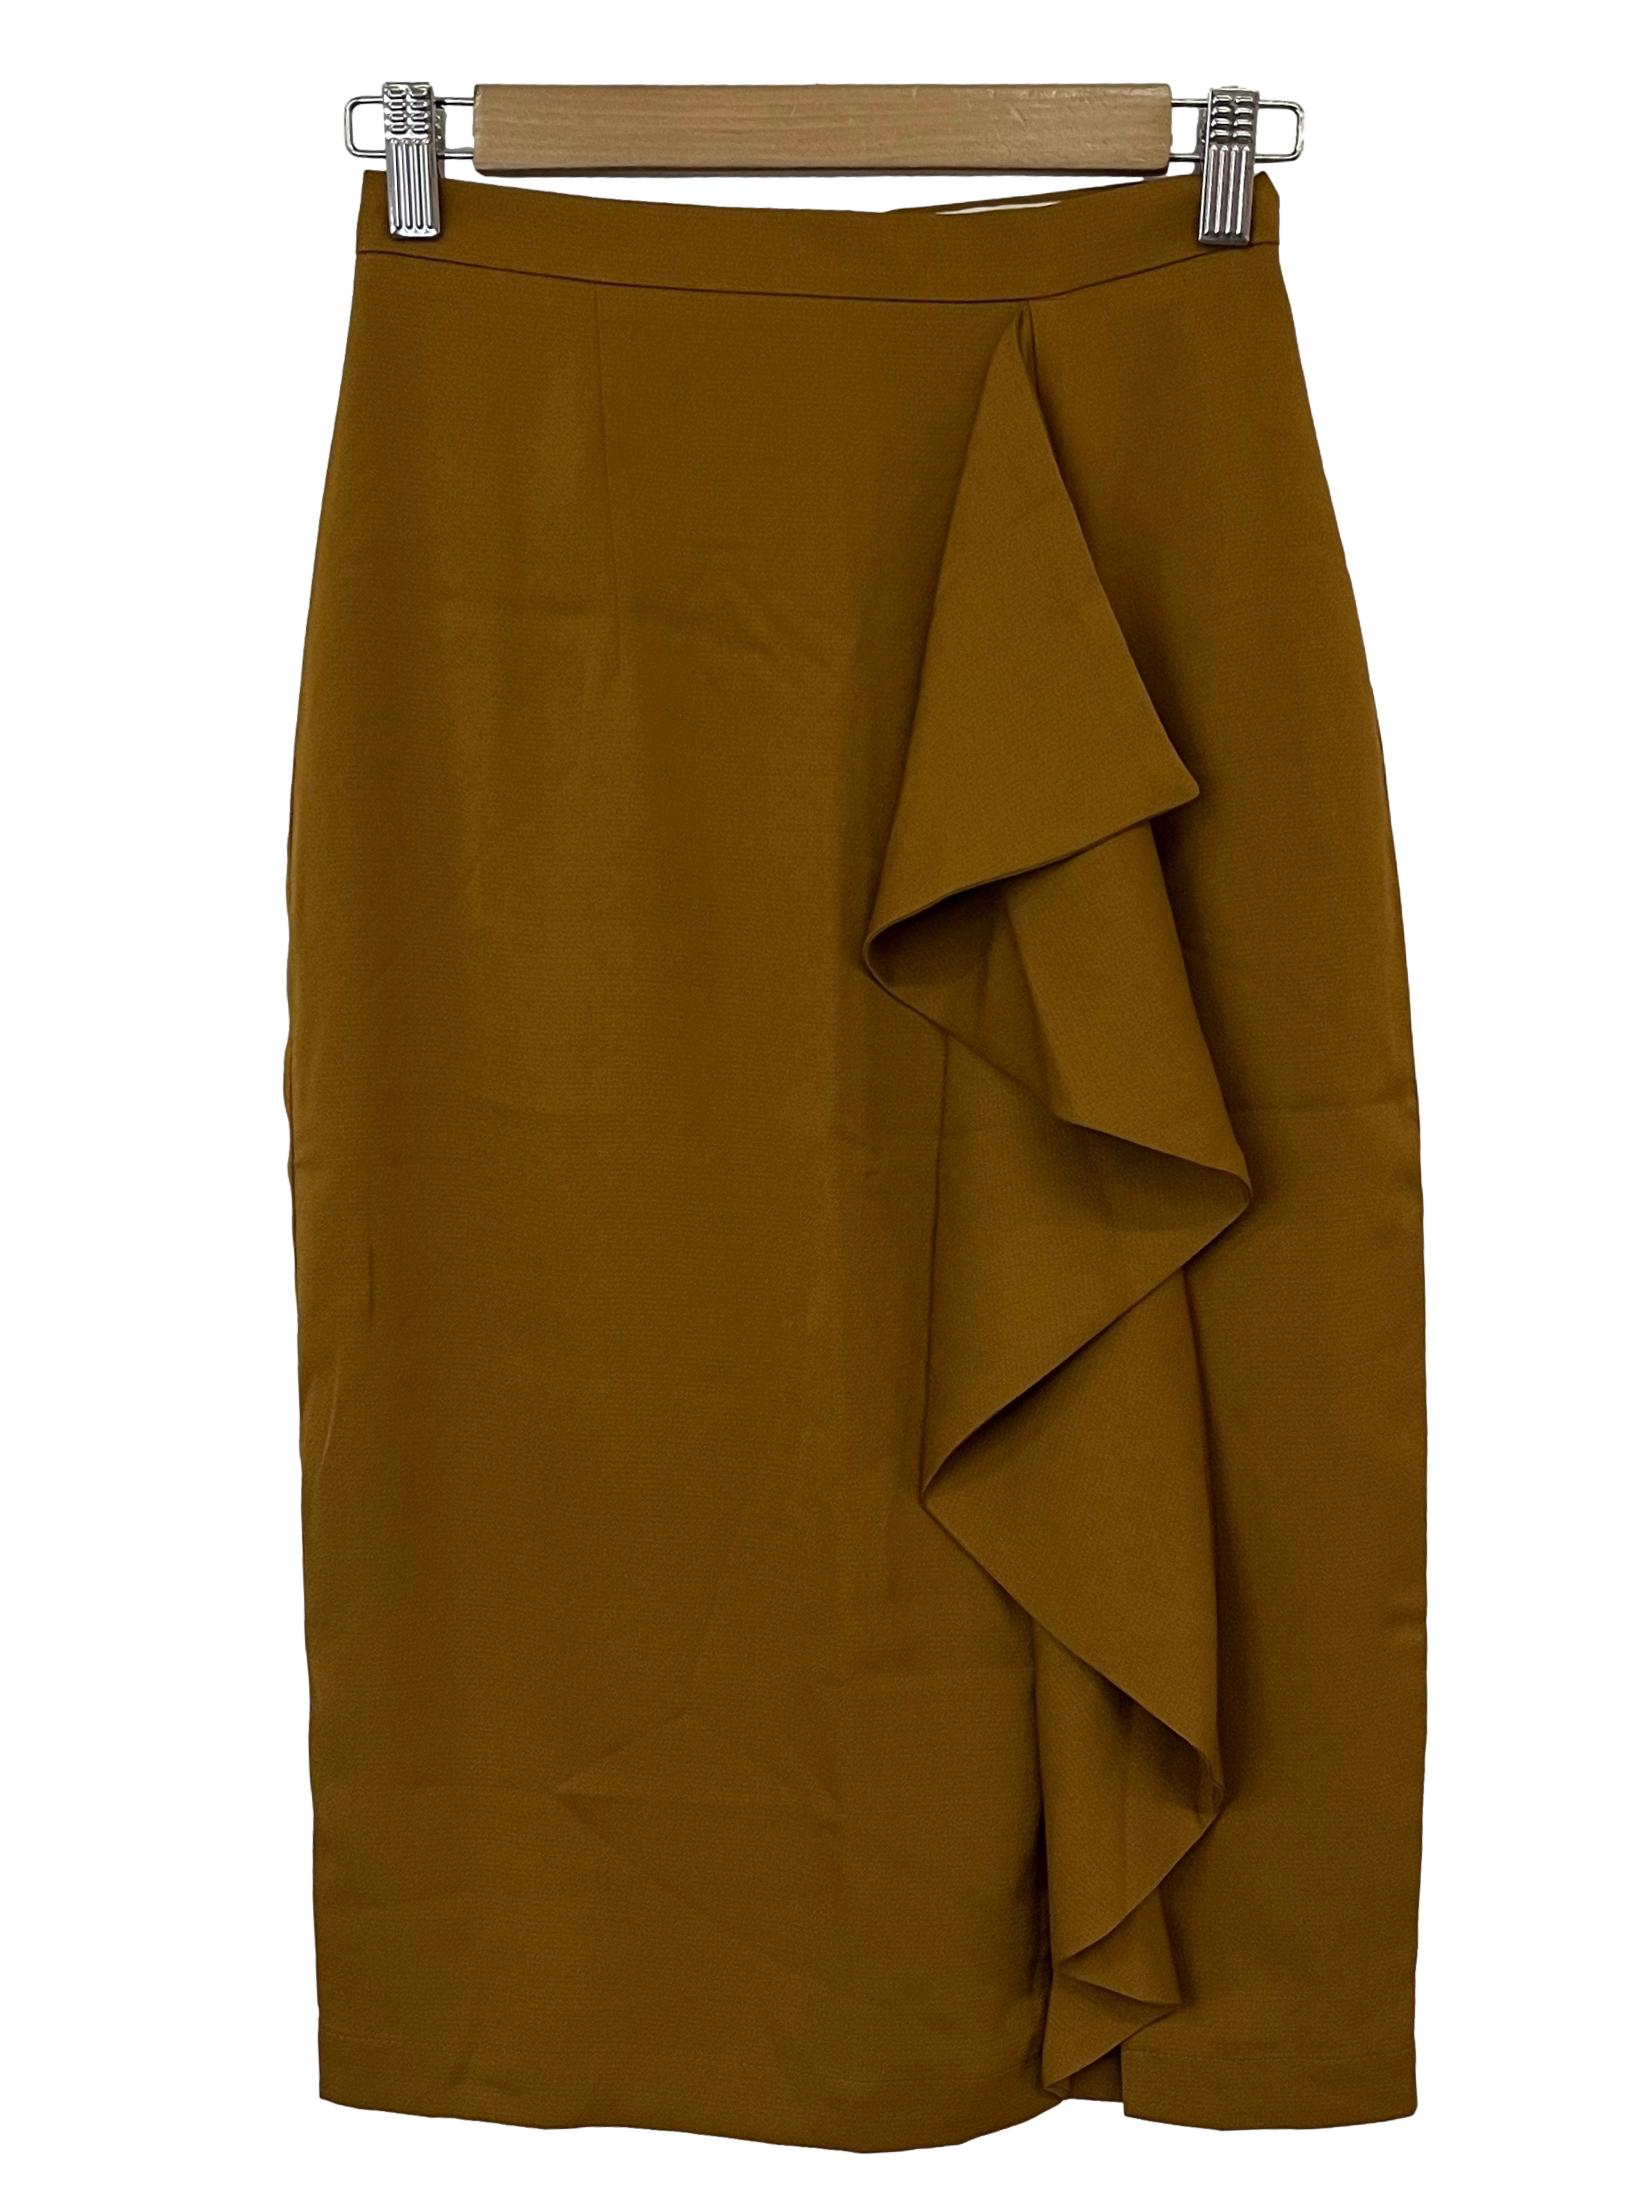 Burnt Orange Asymmetrical Skirt LB